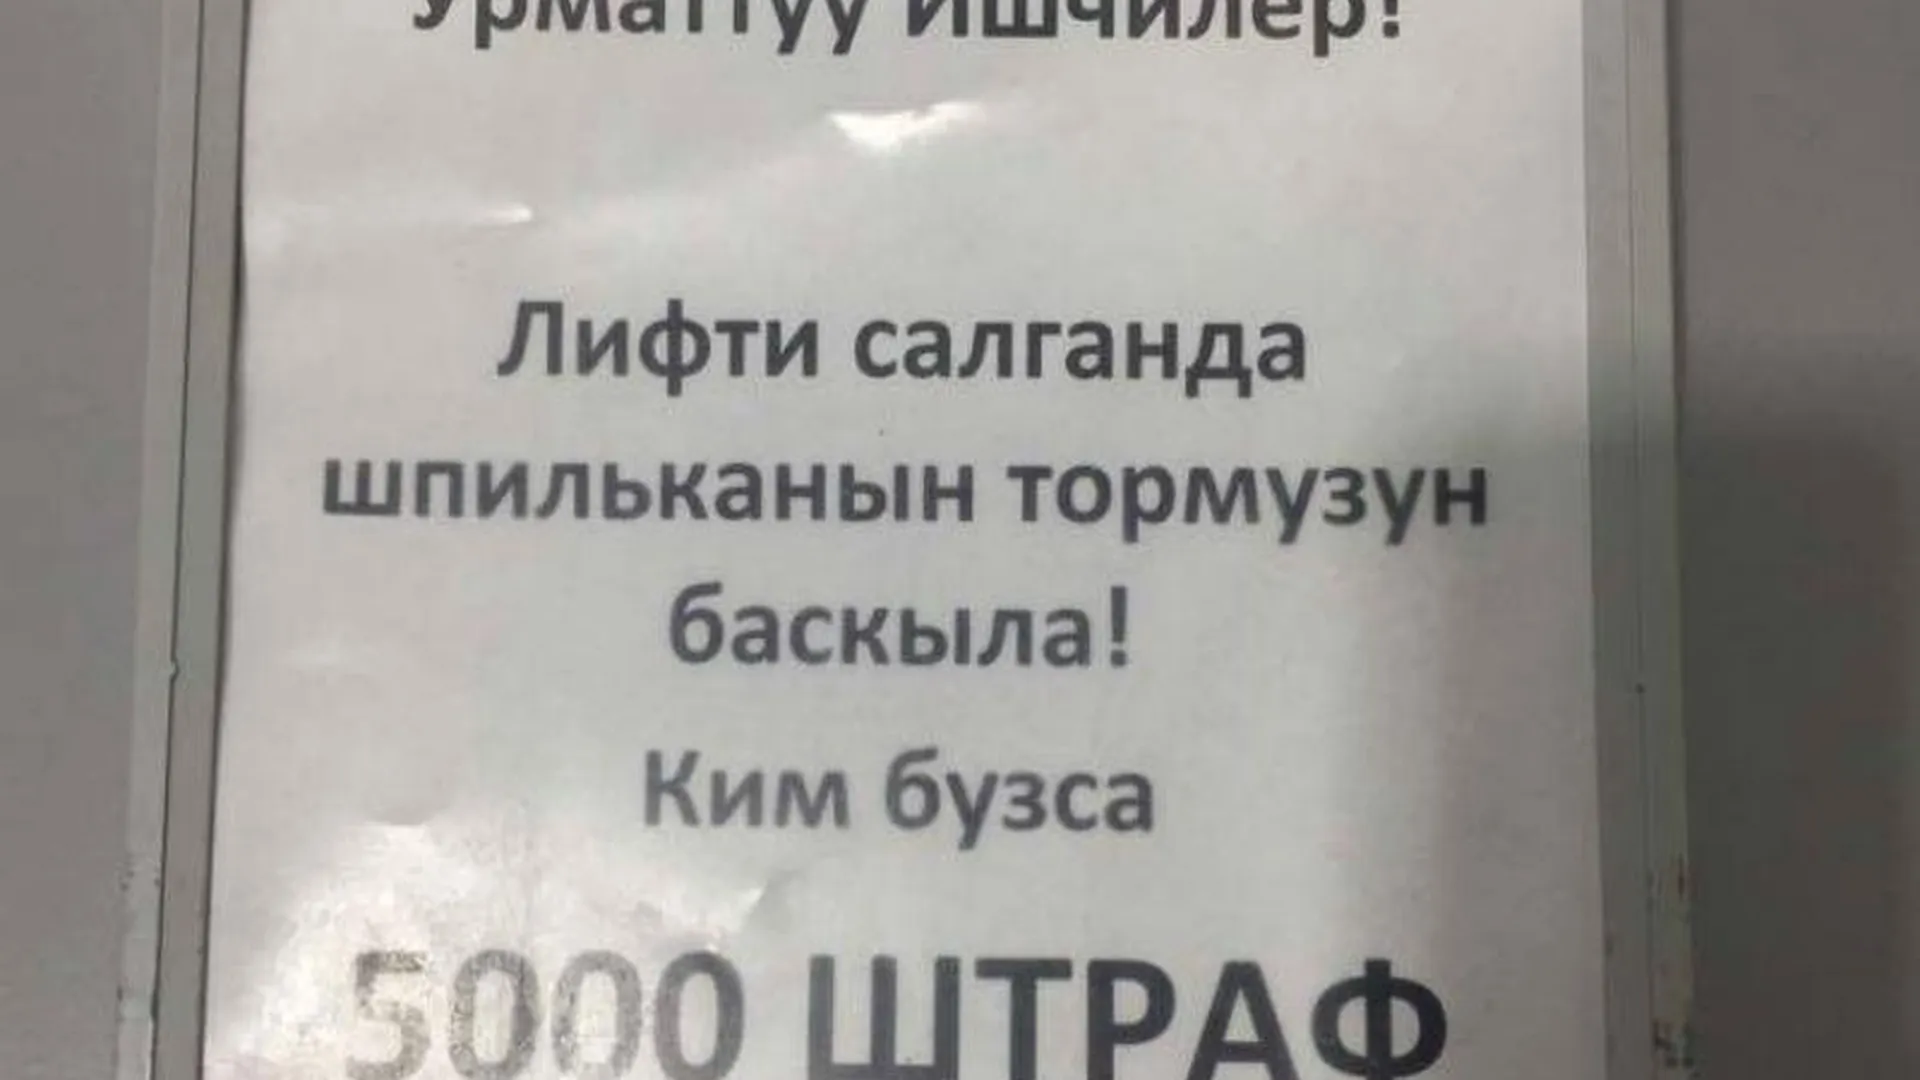 В магазине Пушкина вывесили объявление для сотрудников на киргизском языке